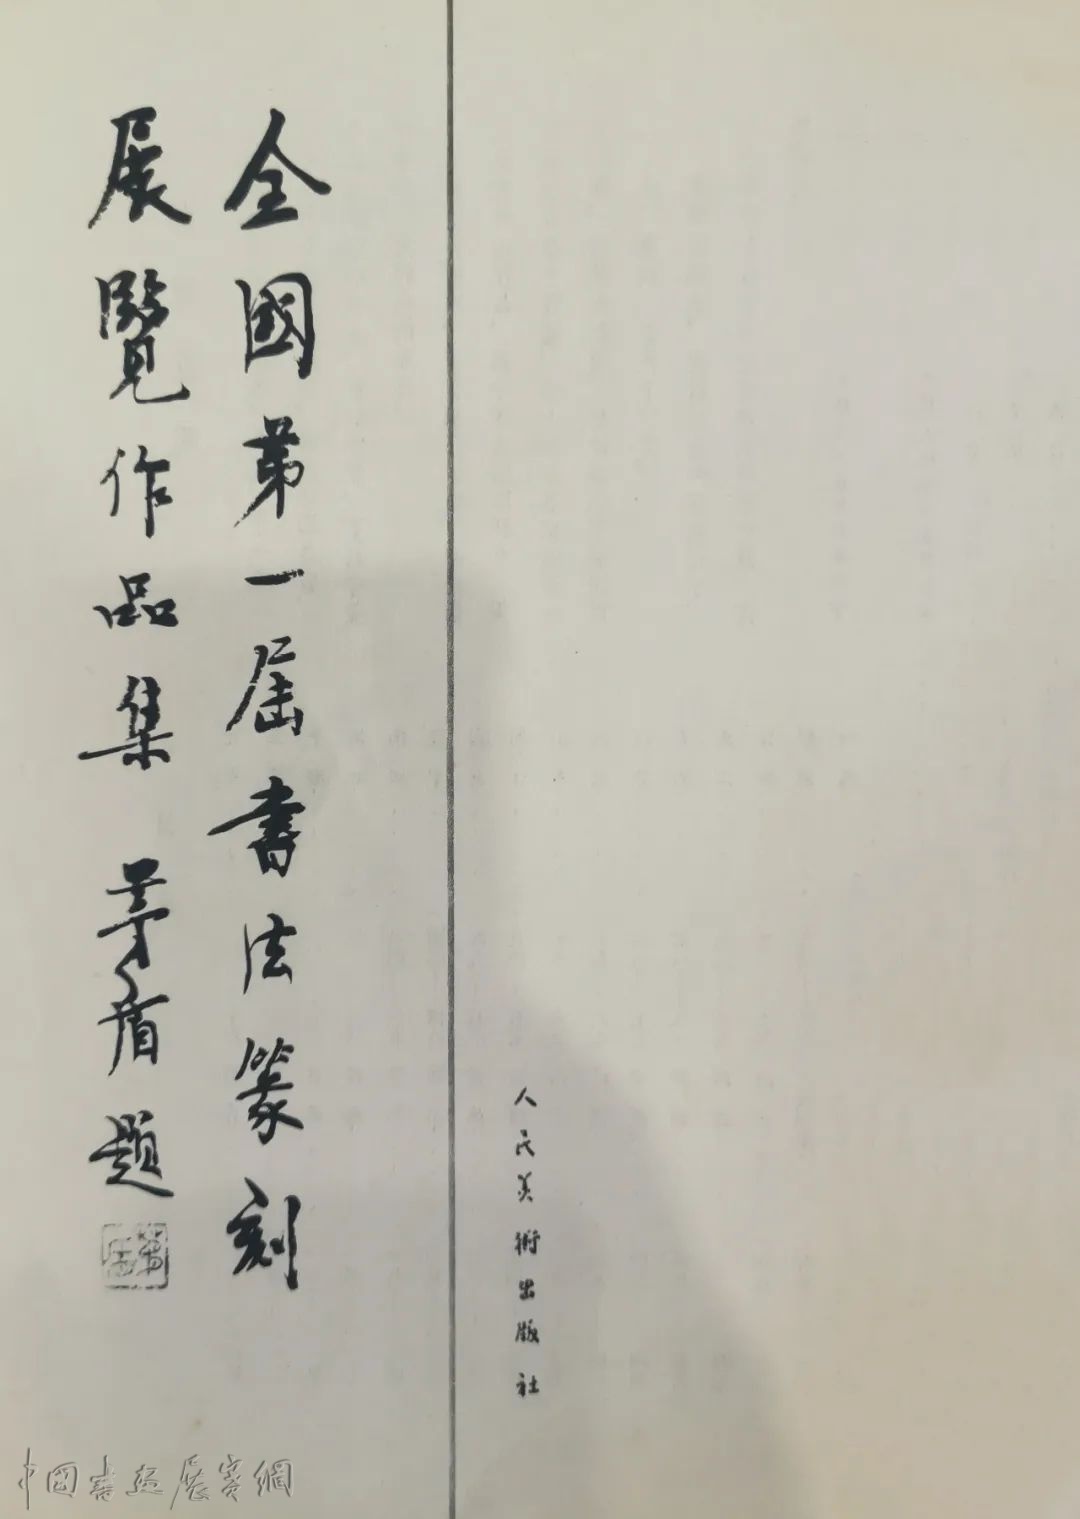 《书法艺术的春天》——中国书法家协会顾问聂成文口述回忆全国第一届书法篆刻作品展由来